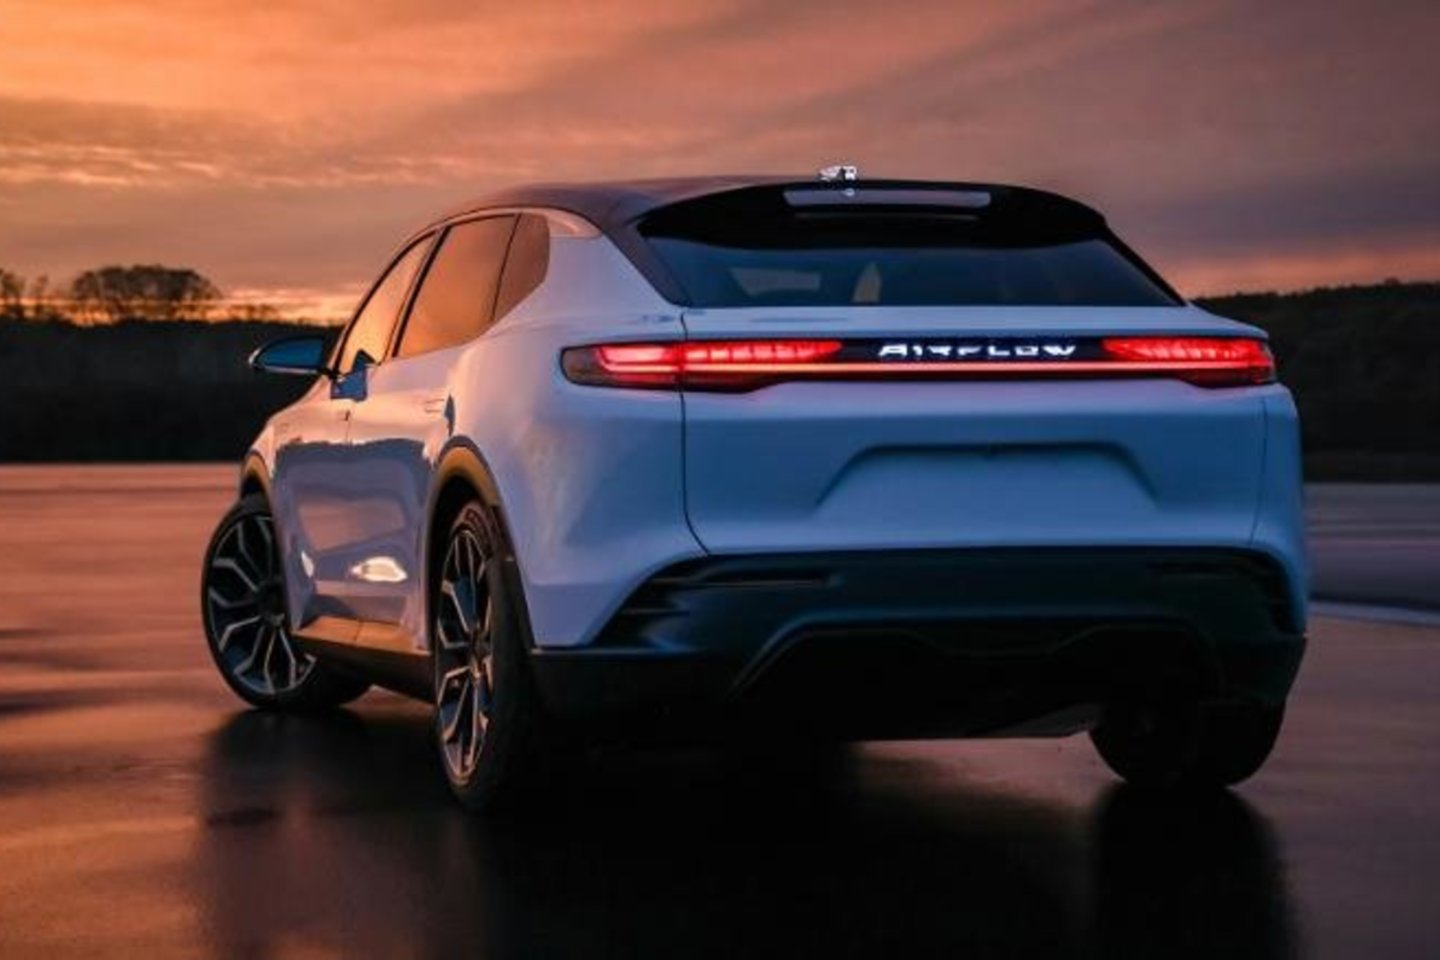 Spėjama, kad taip atrodys koncepcinis „Chrysler Airflow“ automobilis – elektrinis „Stellantis“ markės krosoverinis visureigis.<br>cnn.com. nuotr.